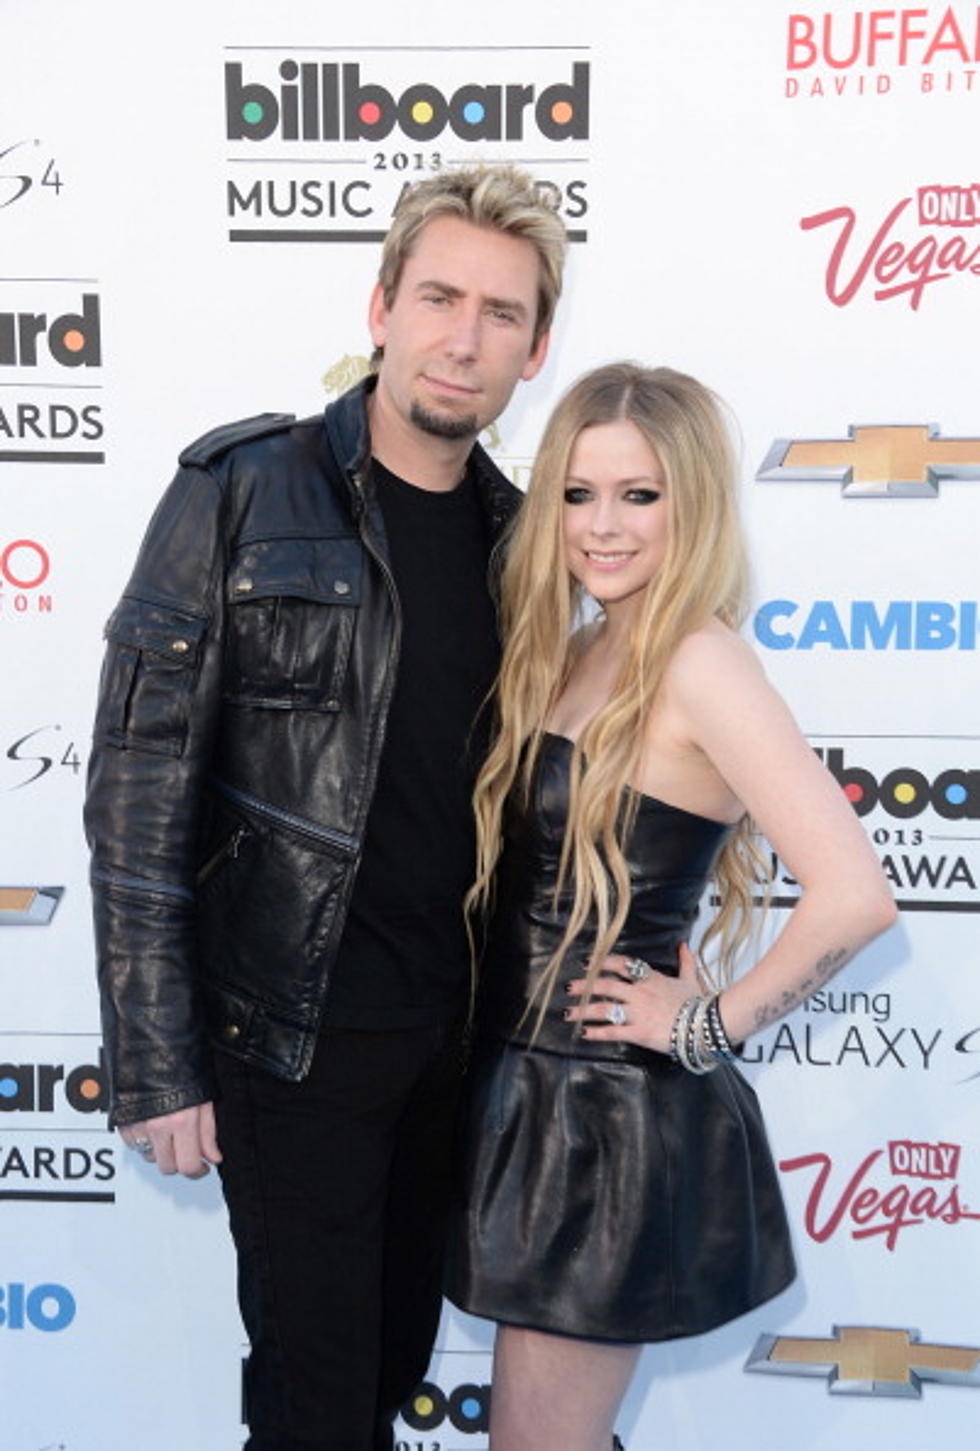 Nickelback Singer Chad Kroeger Marries Avril Lavigne